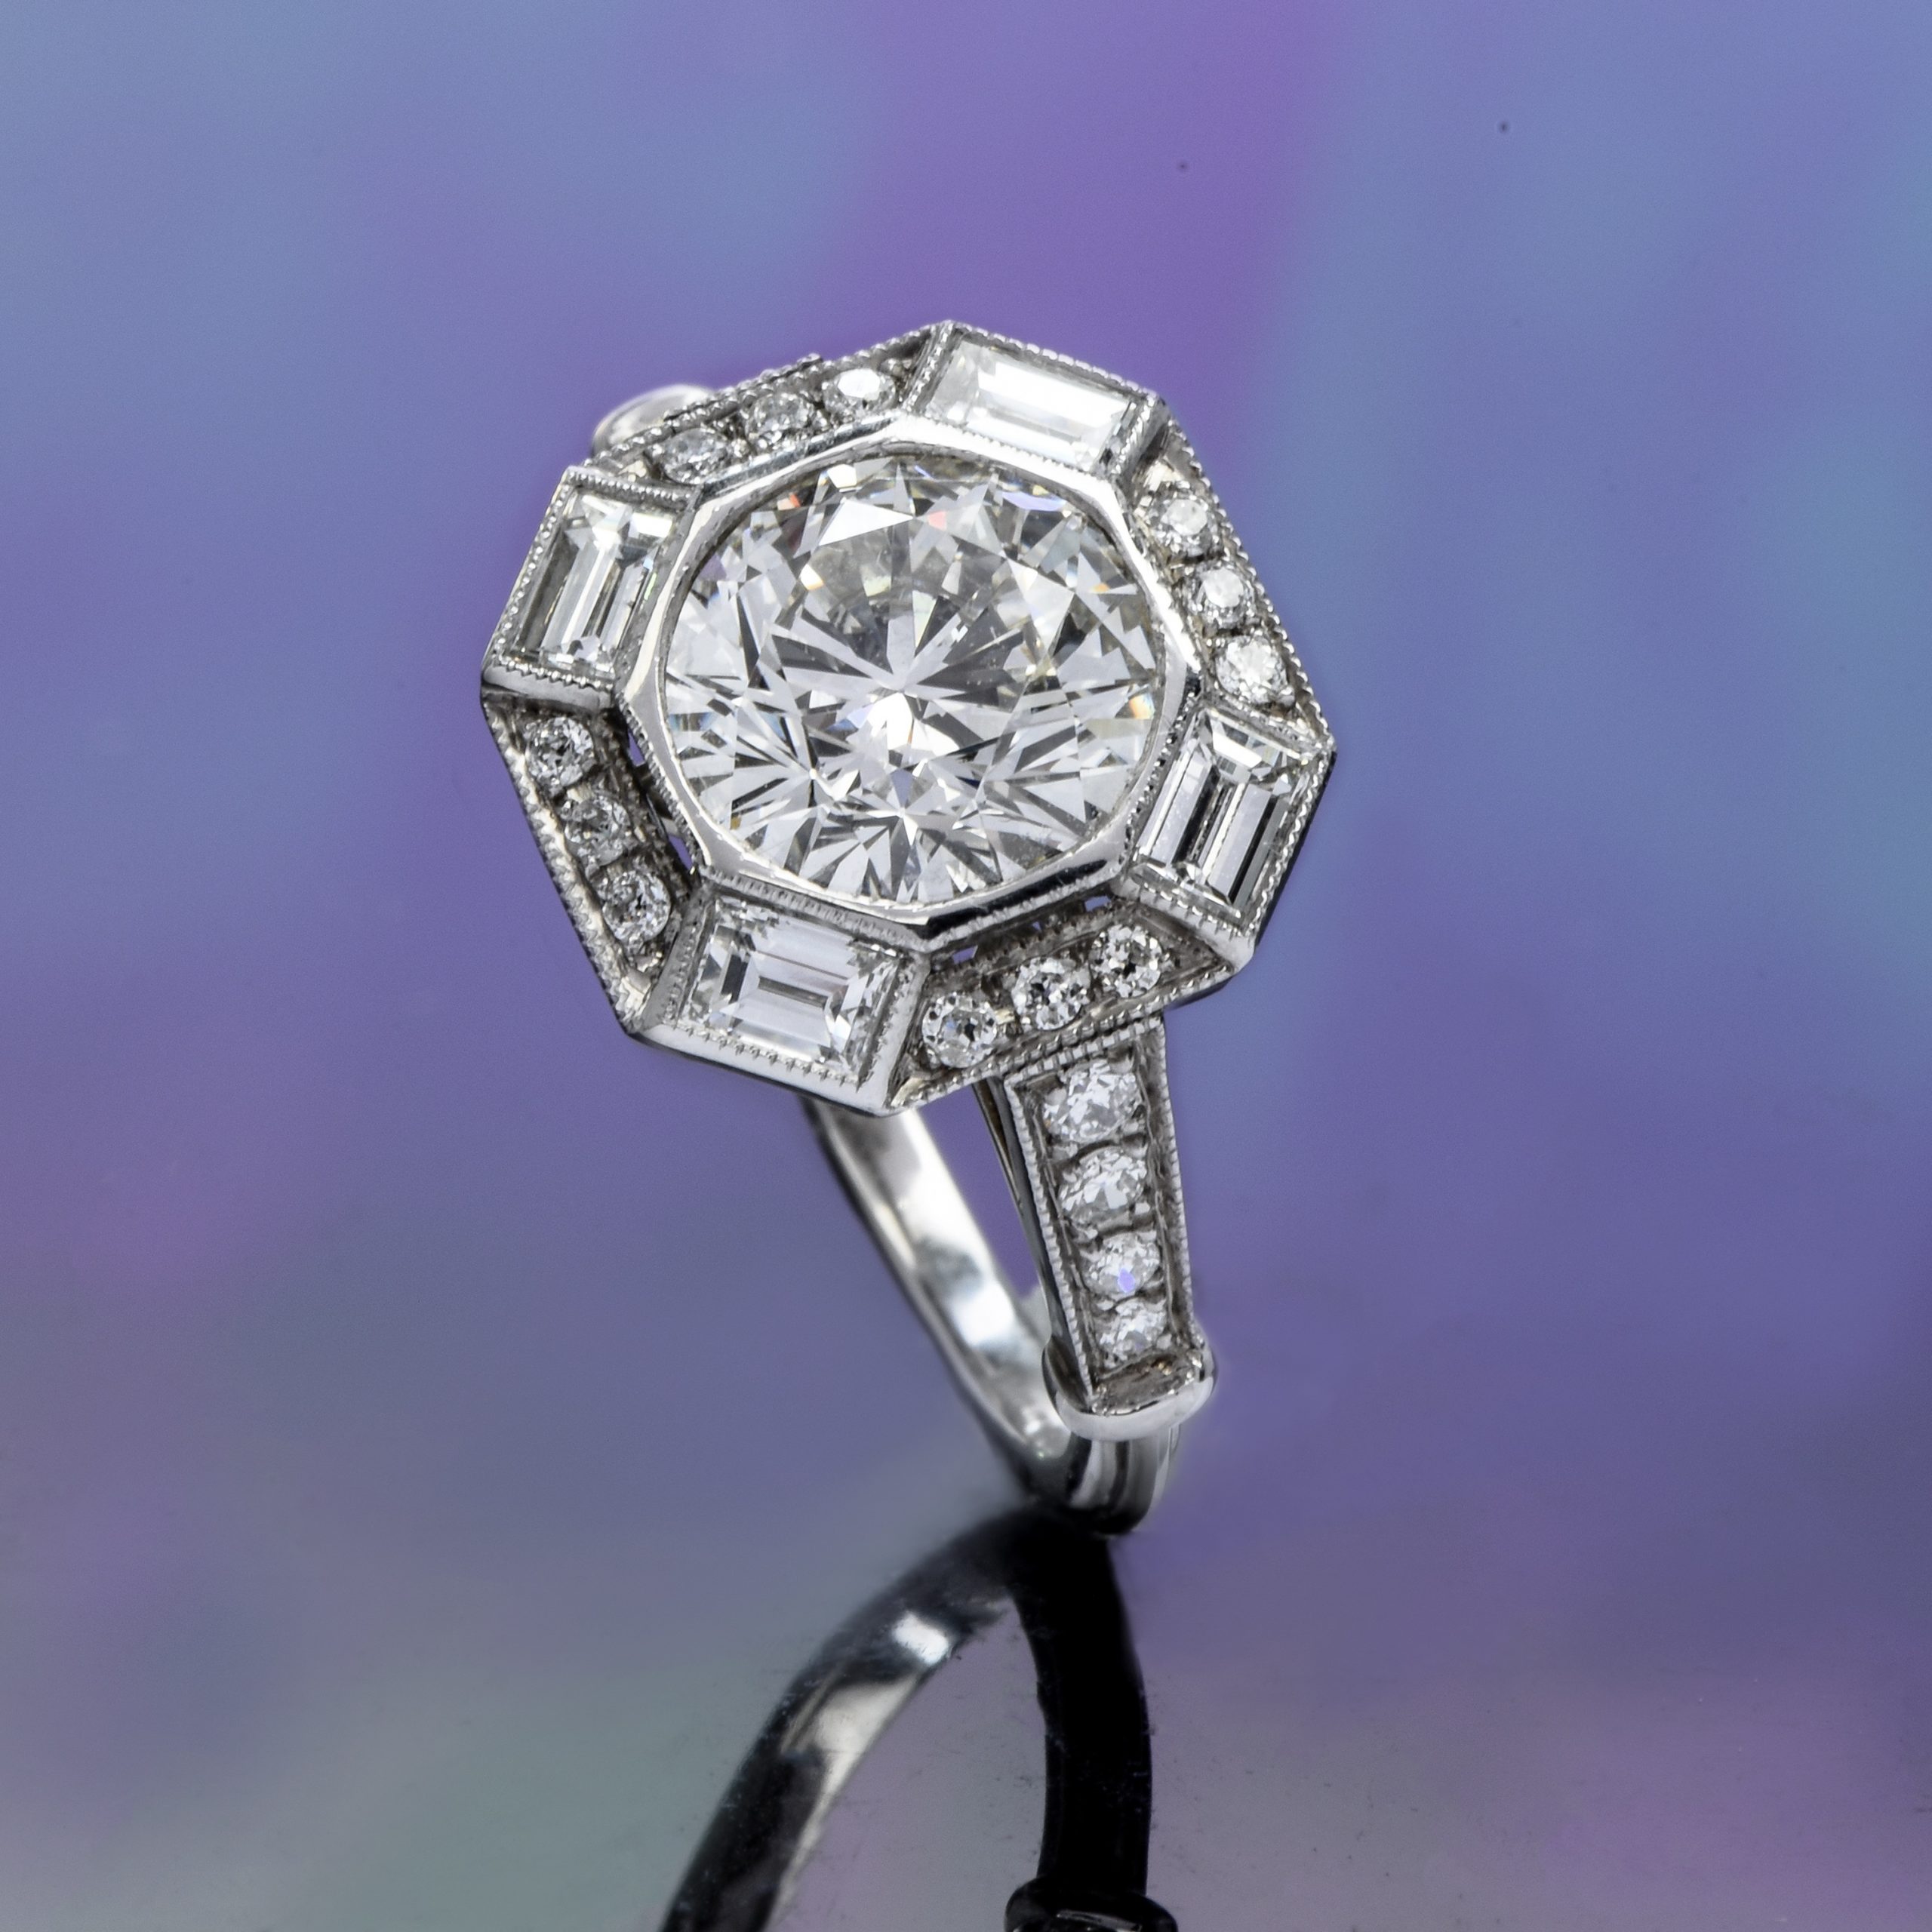 1 Carat Diamond Ring Price | Buying Guide